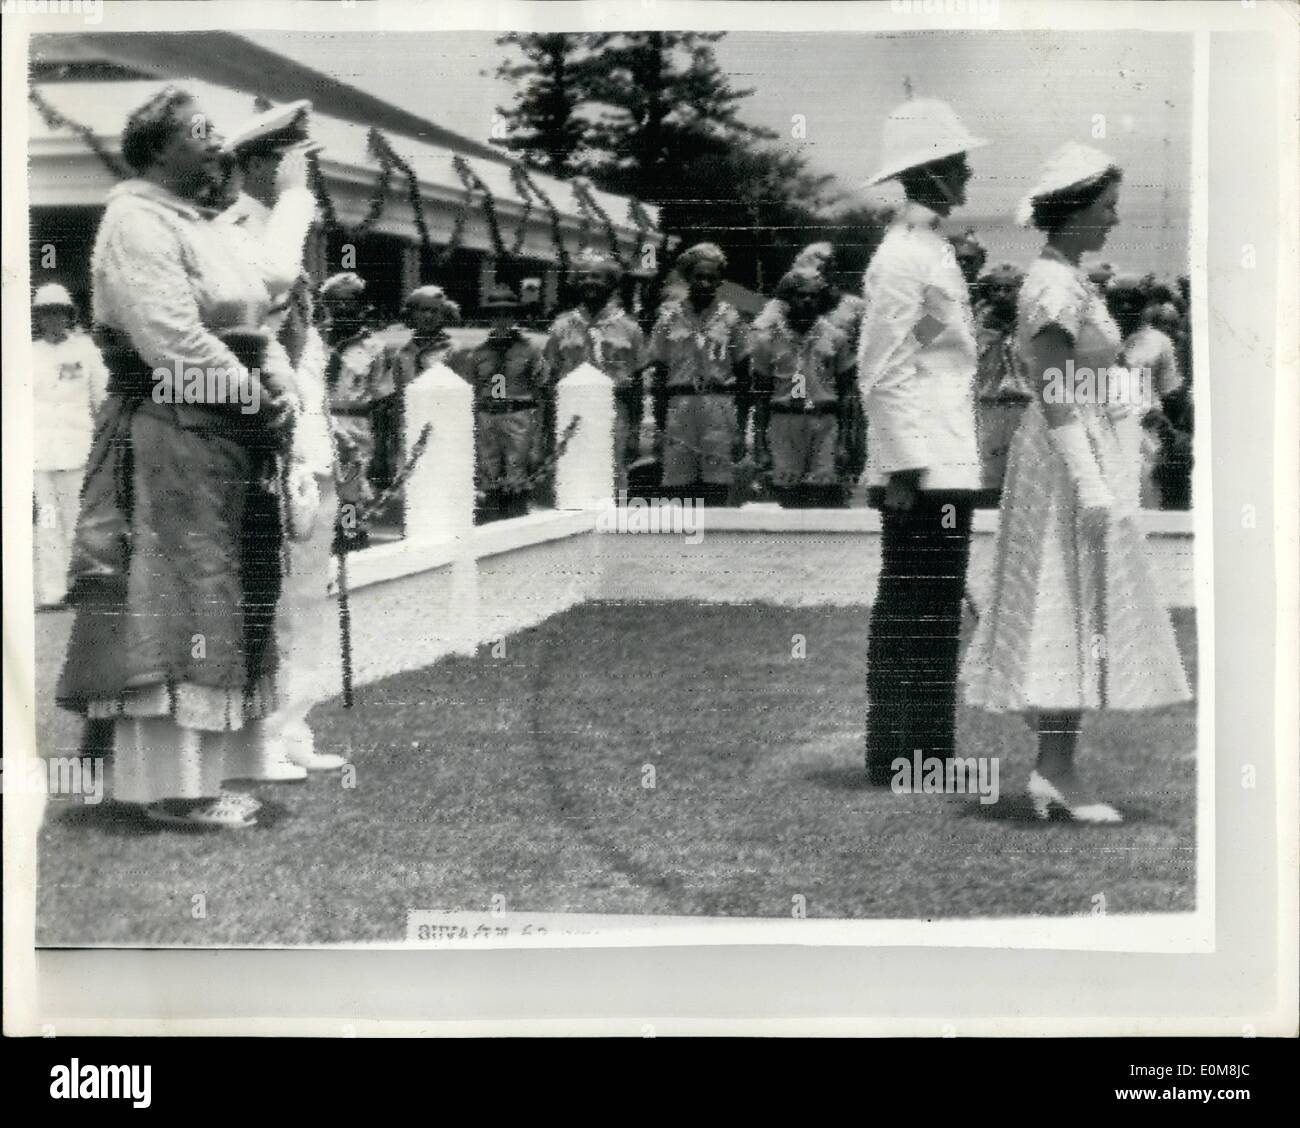 12. Dezember 1953 - Queen Elizabeth kommt In Tonga: Queen Elizabeth weiter, dass ihre königliche Reise von Suva, Fidschi, Tonga angekommen war es ein Tag jubeln, tanzen und schlemmen. Tonga tolle Begrüßung begann mit zwei der weltweit amtierende Königin teilen einen Witz, der an der Krönung Bay begann. Als die Königin und die hoch aufragenden Königin Salote von der Fastooned losfuhr wharf eine Wolke herabgesandt '' Token'' Dusche, eine sanfte Erinnerung an Tag der Krönung Stockfoto